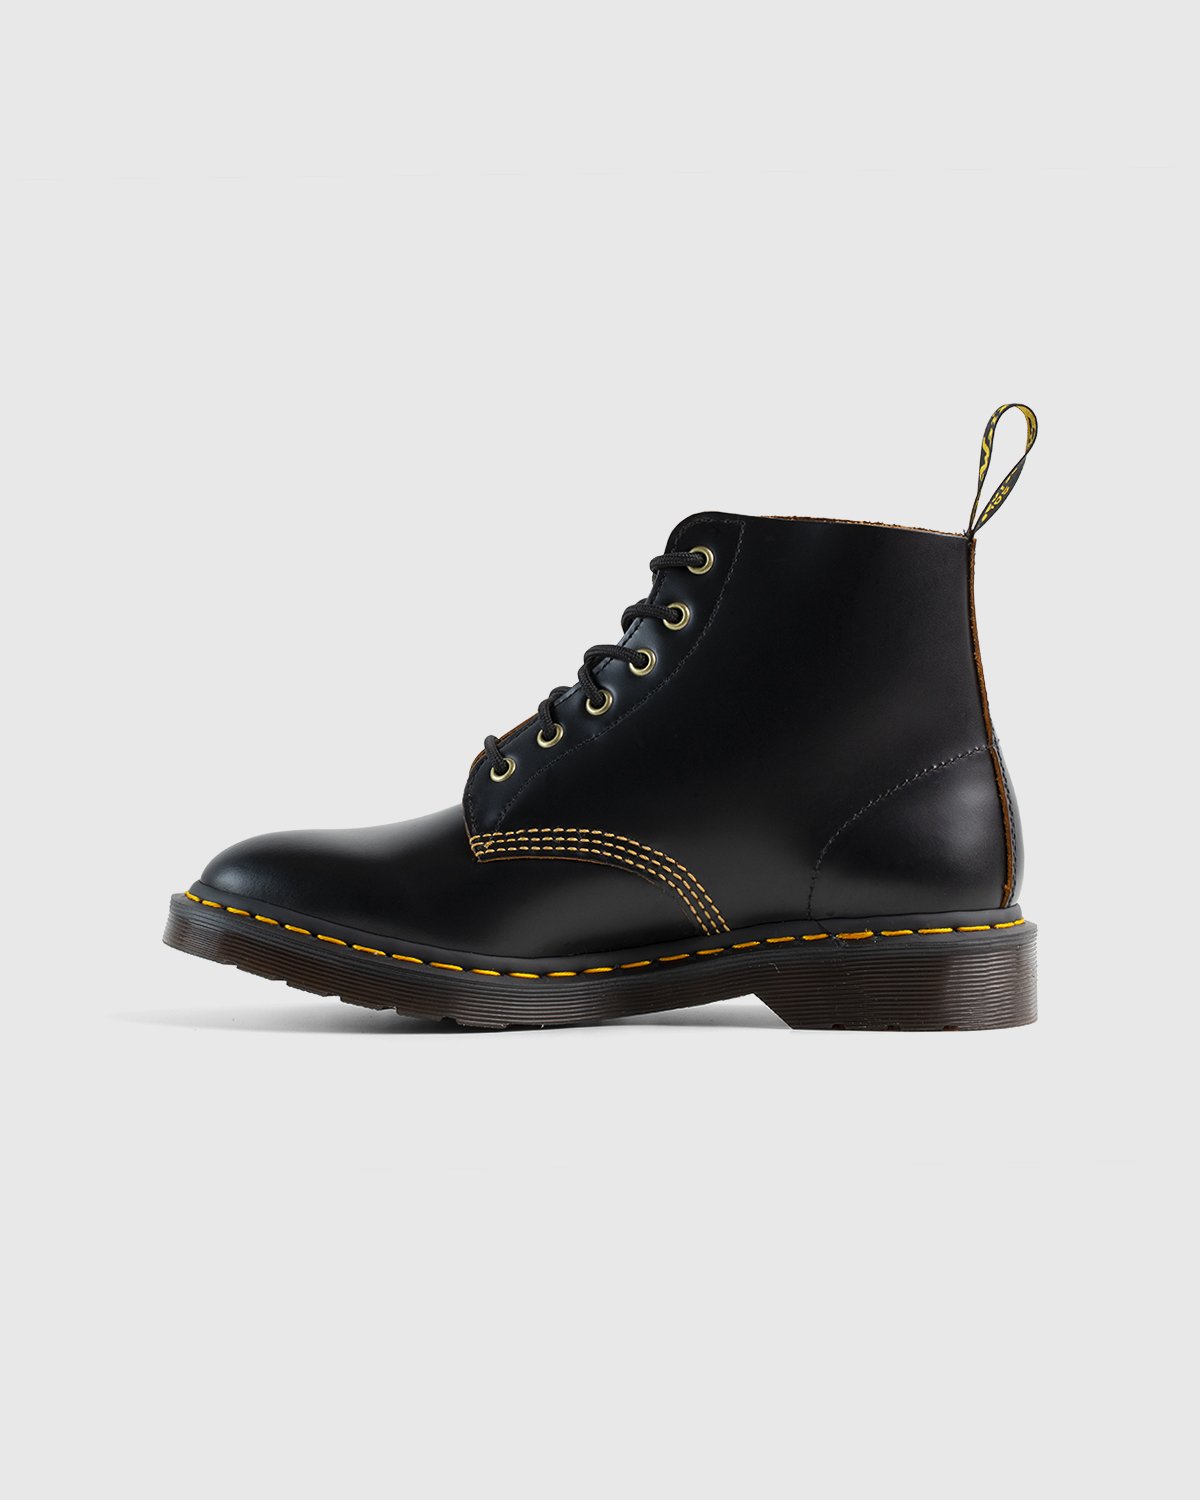 Dr. Martens - 101 Arc Black Vintage Smooth - Footwear - Black - Image 2